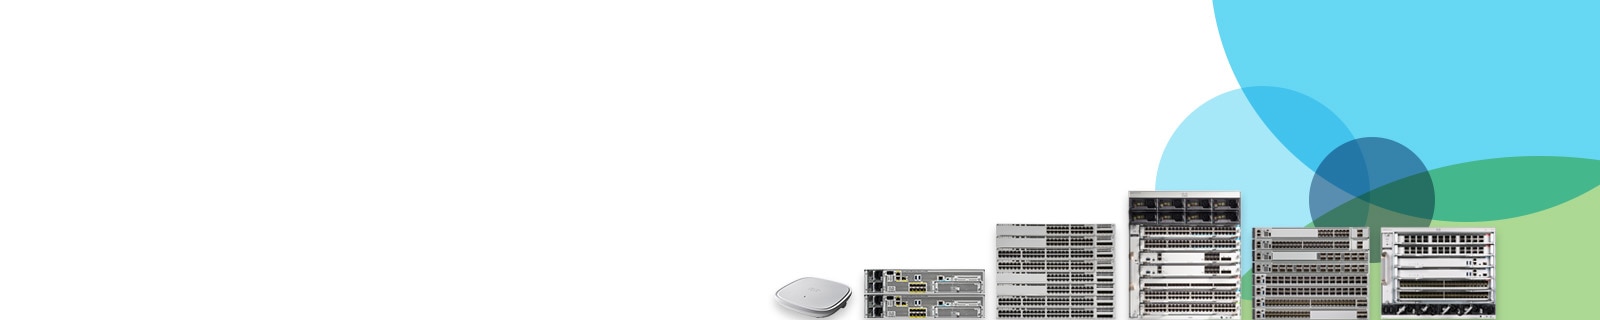 Cisco Catalyst 9000-Produktfamilie für Wireless und Switching